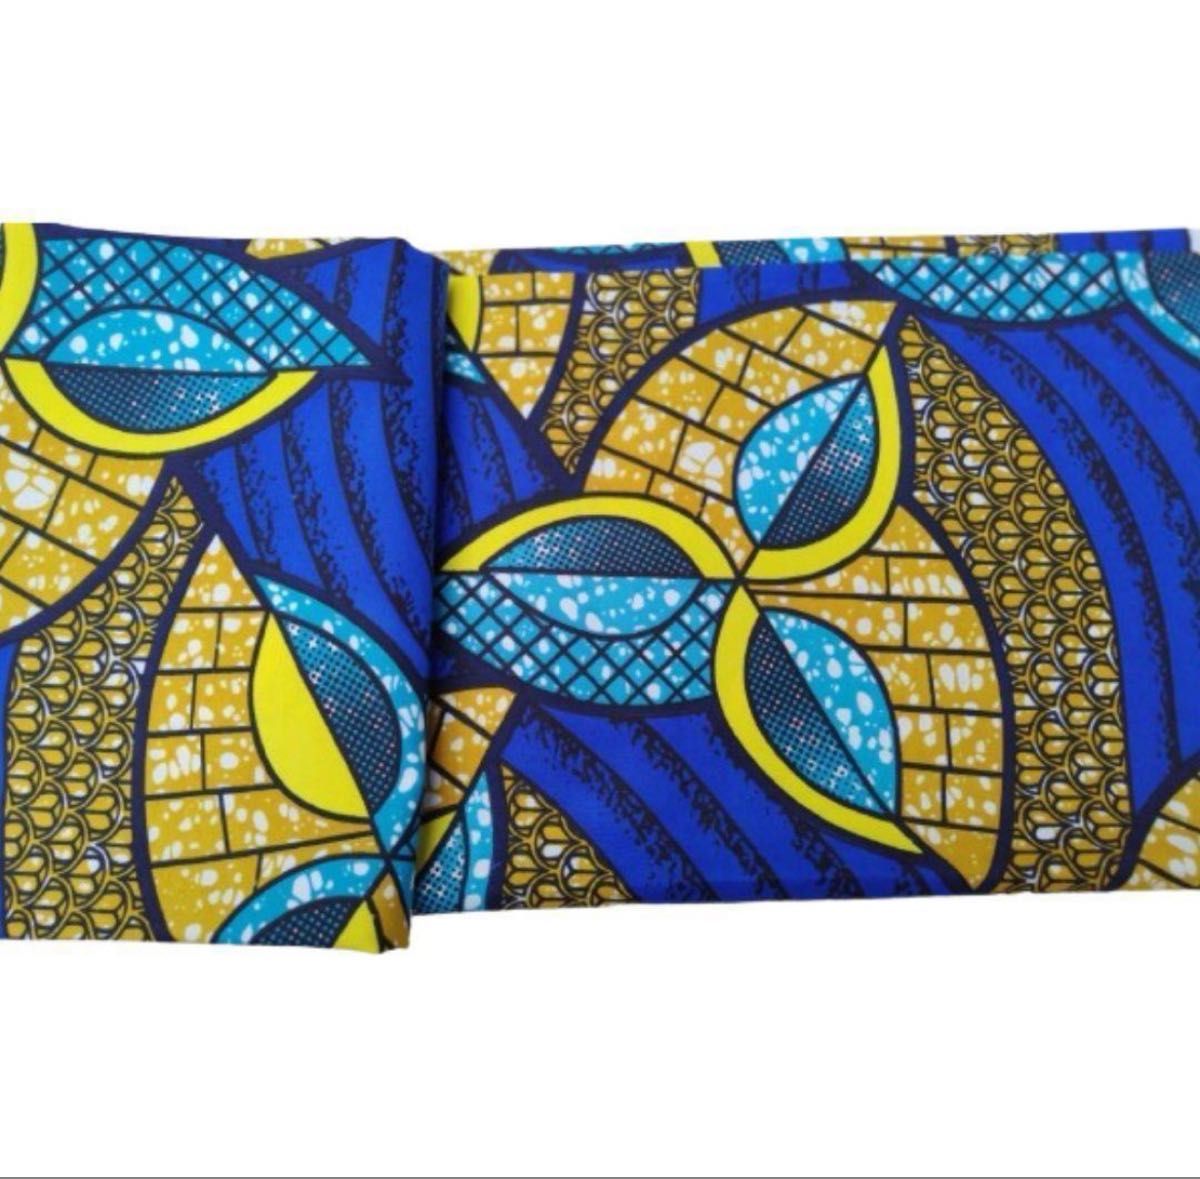 アフリカ布 2ヤード アフリカンバティック ターバン 生地 エスニック おしゃれ バッグ ワンピース スカート パンツ 青 黄色